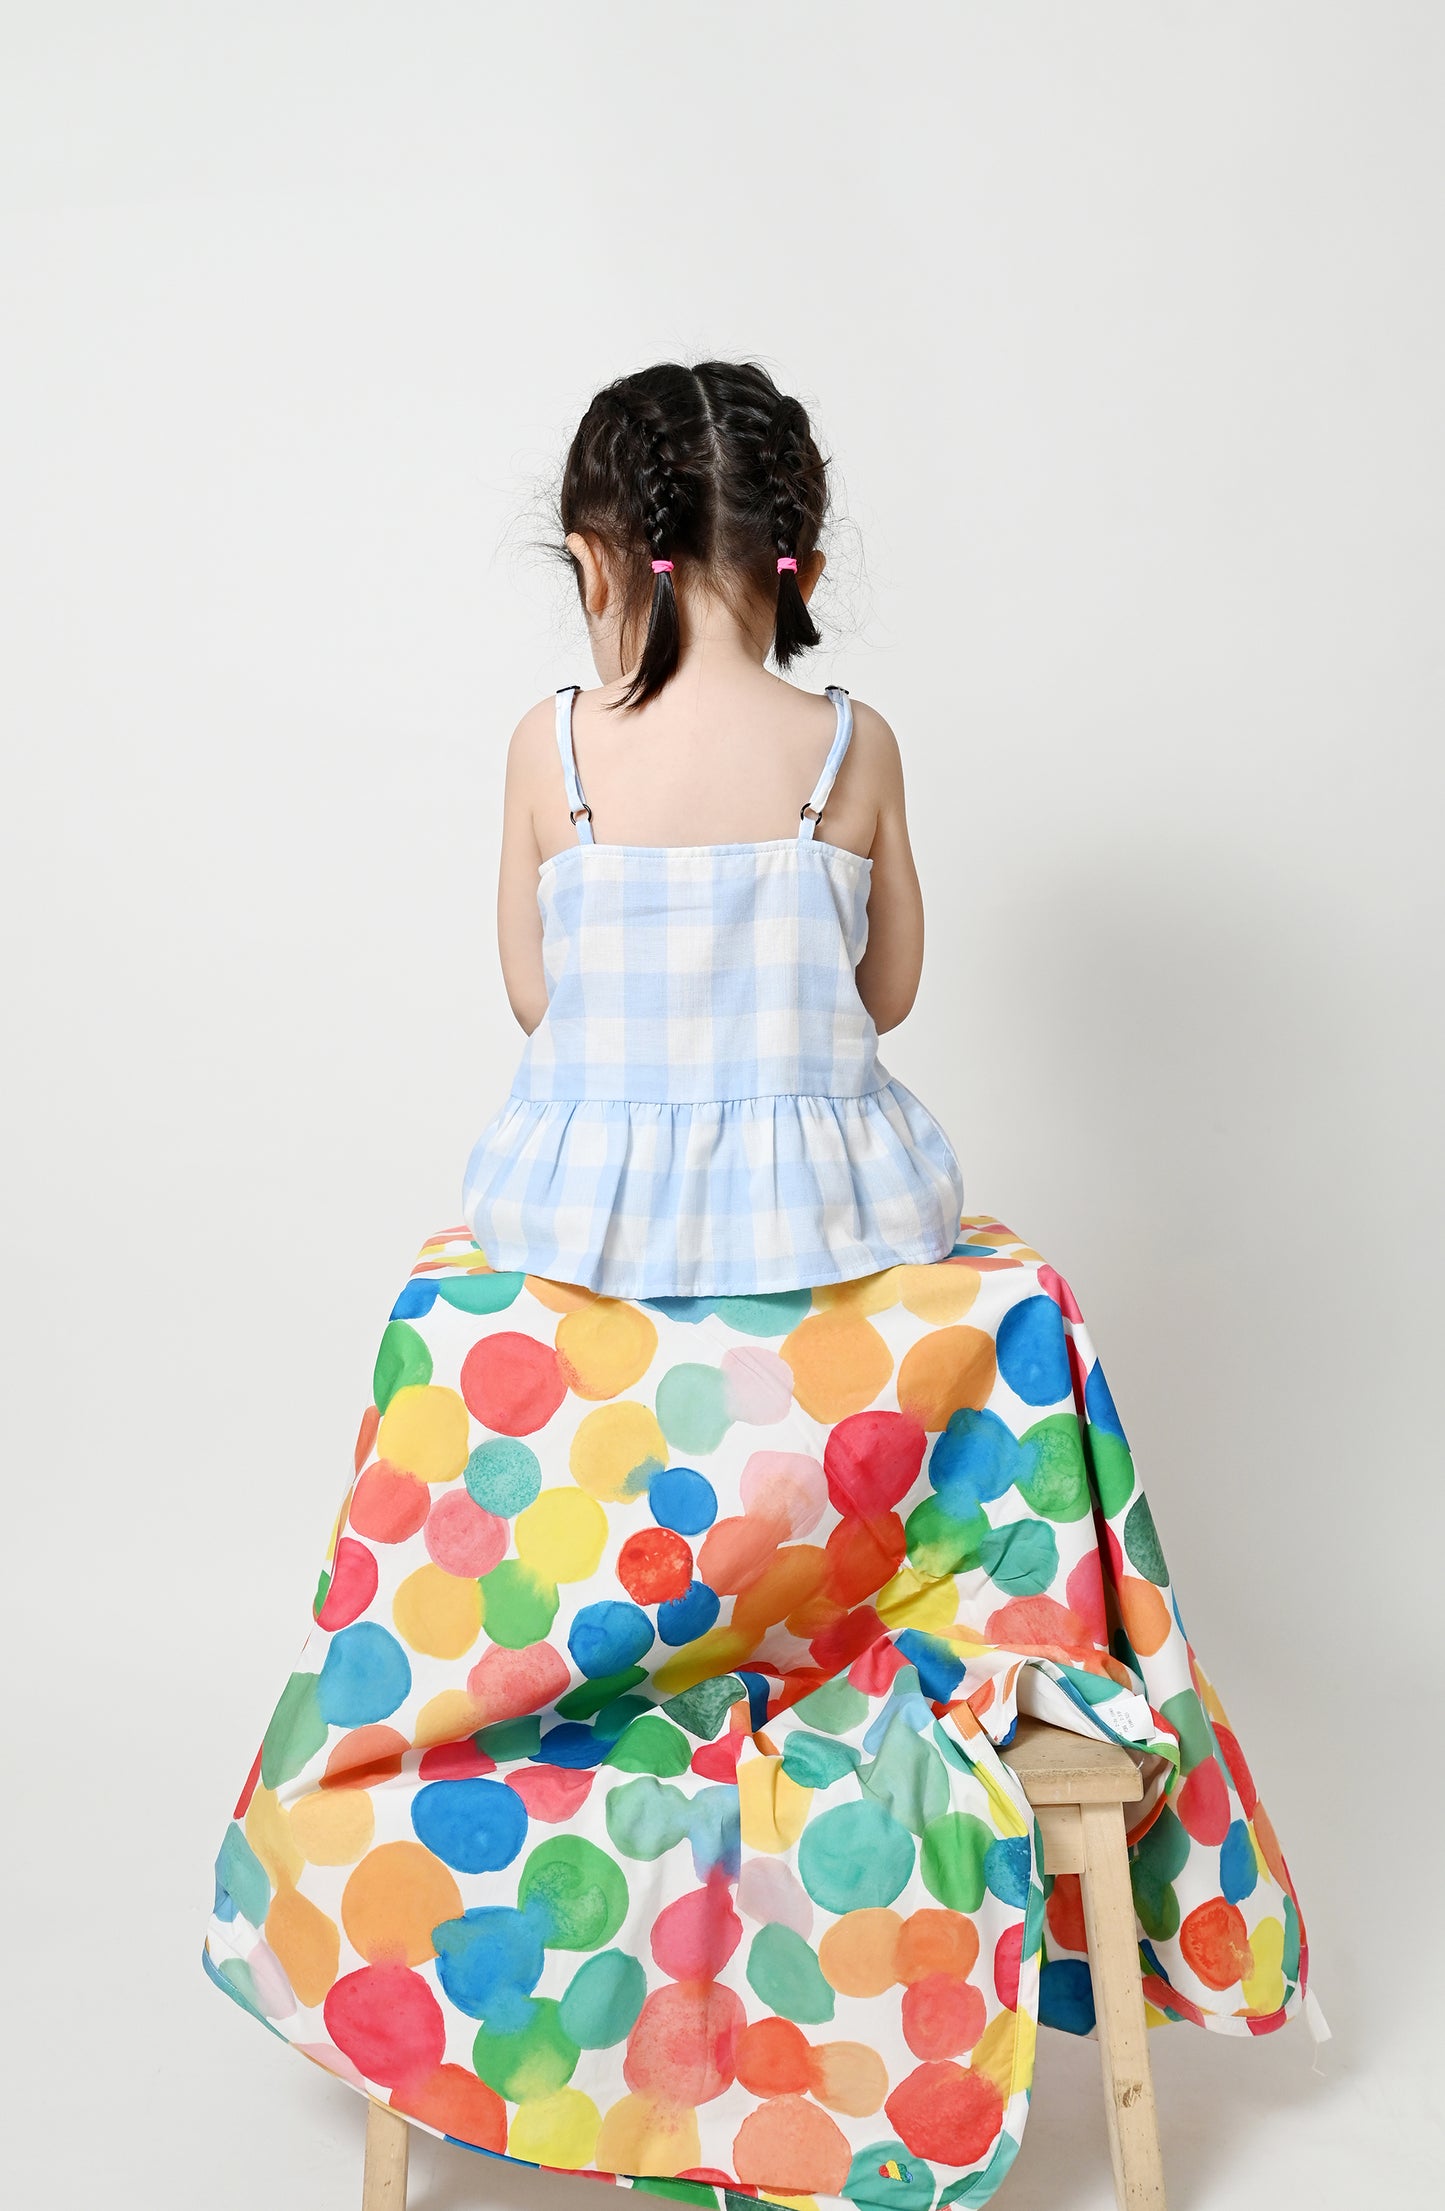 嬰兒服裝 -  藍色大方格格紋印花彩虹刺繡吊帶背心